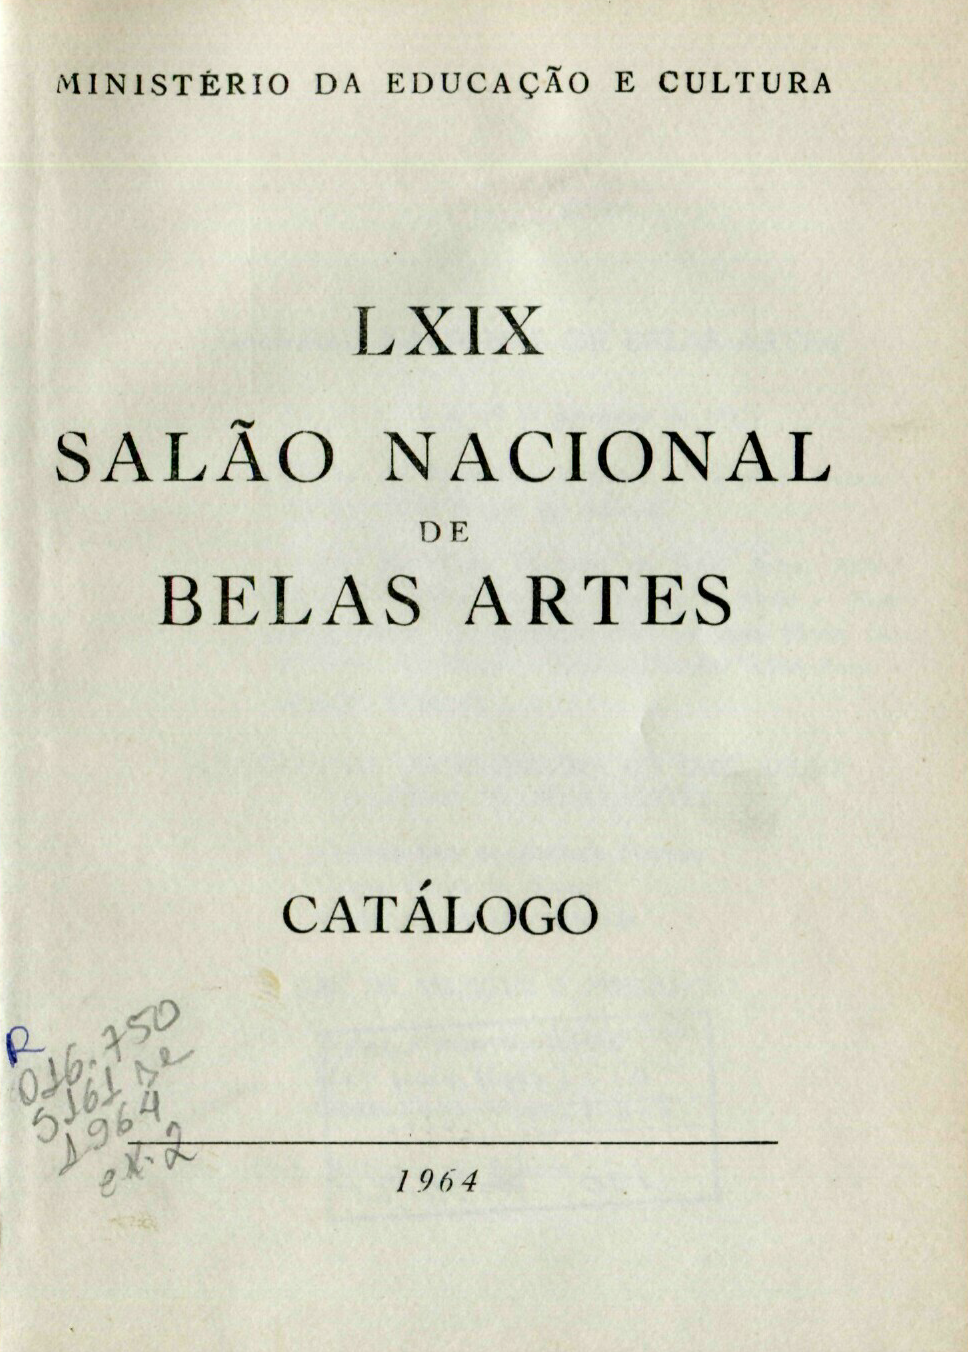 Capa do Livro LXIX Salão Nacional de Belas Artes - Catálogo 1964